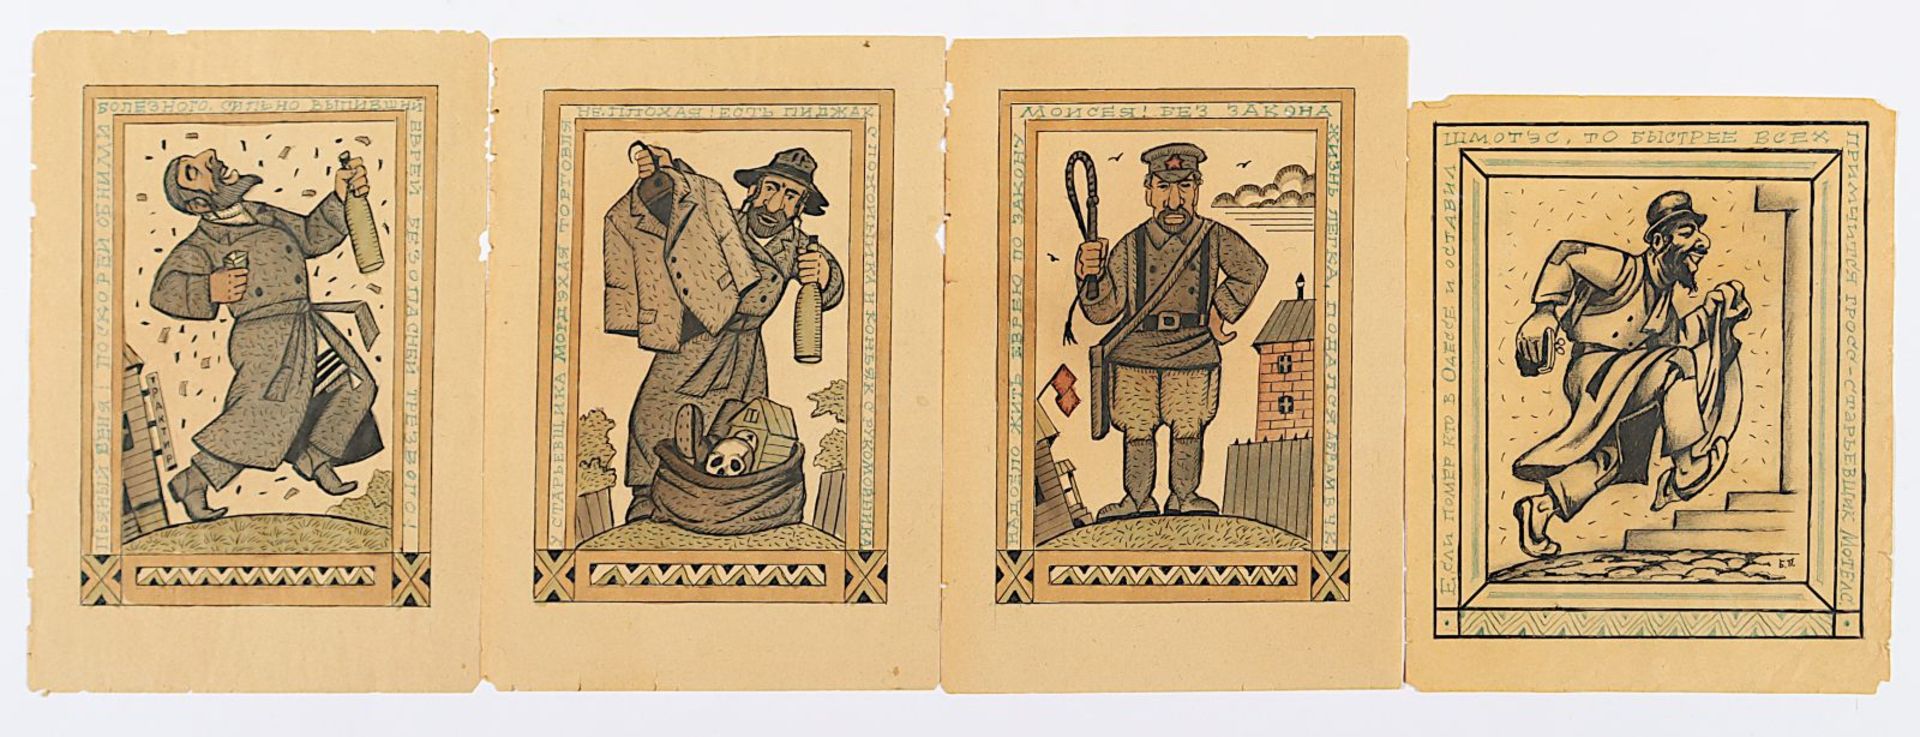 PORAGO, Barzelius (russisch-jüdischer Zeichner 1.H.20.Jh.), "Vier Zeichnungen", ungerahmt